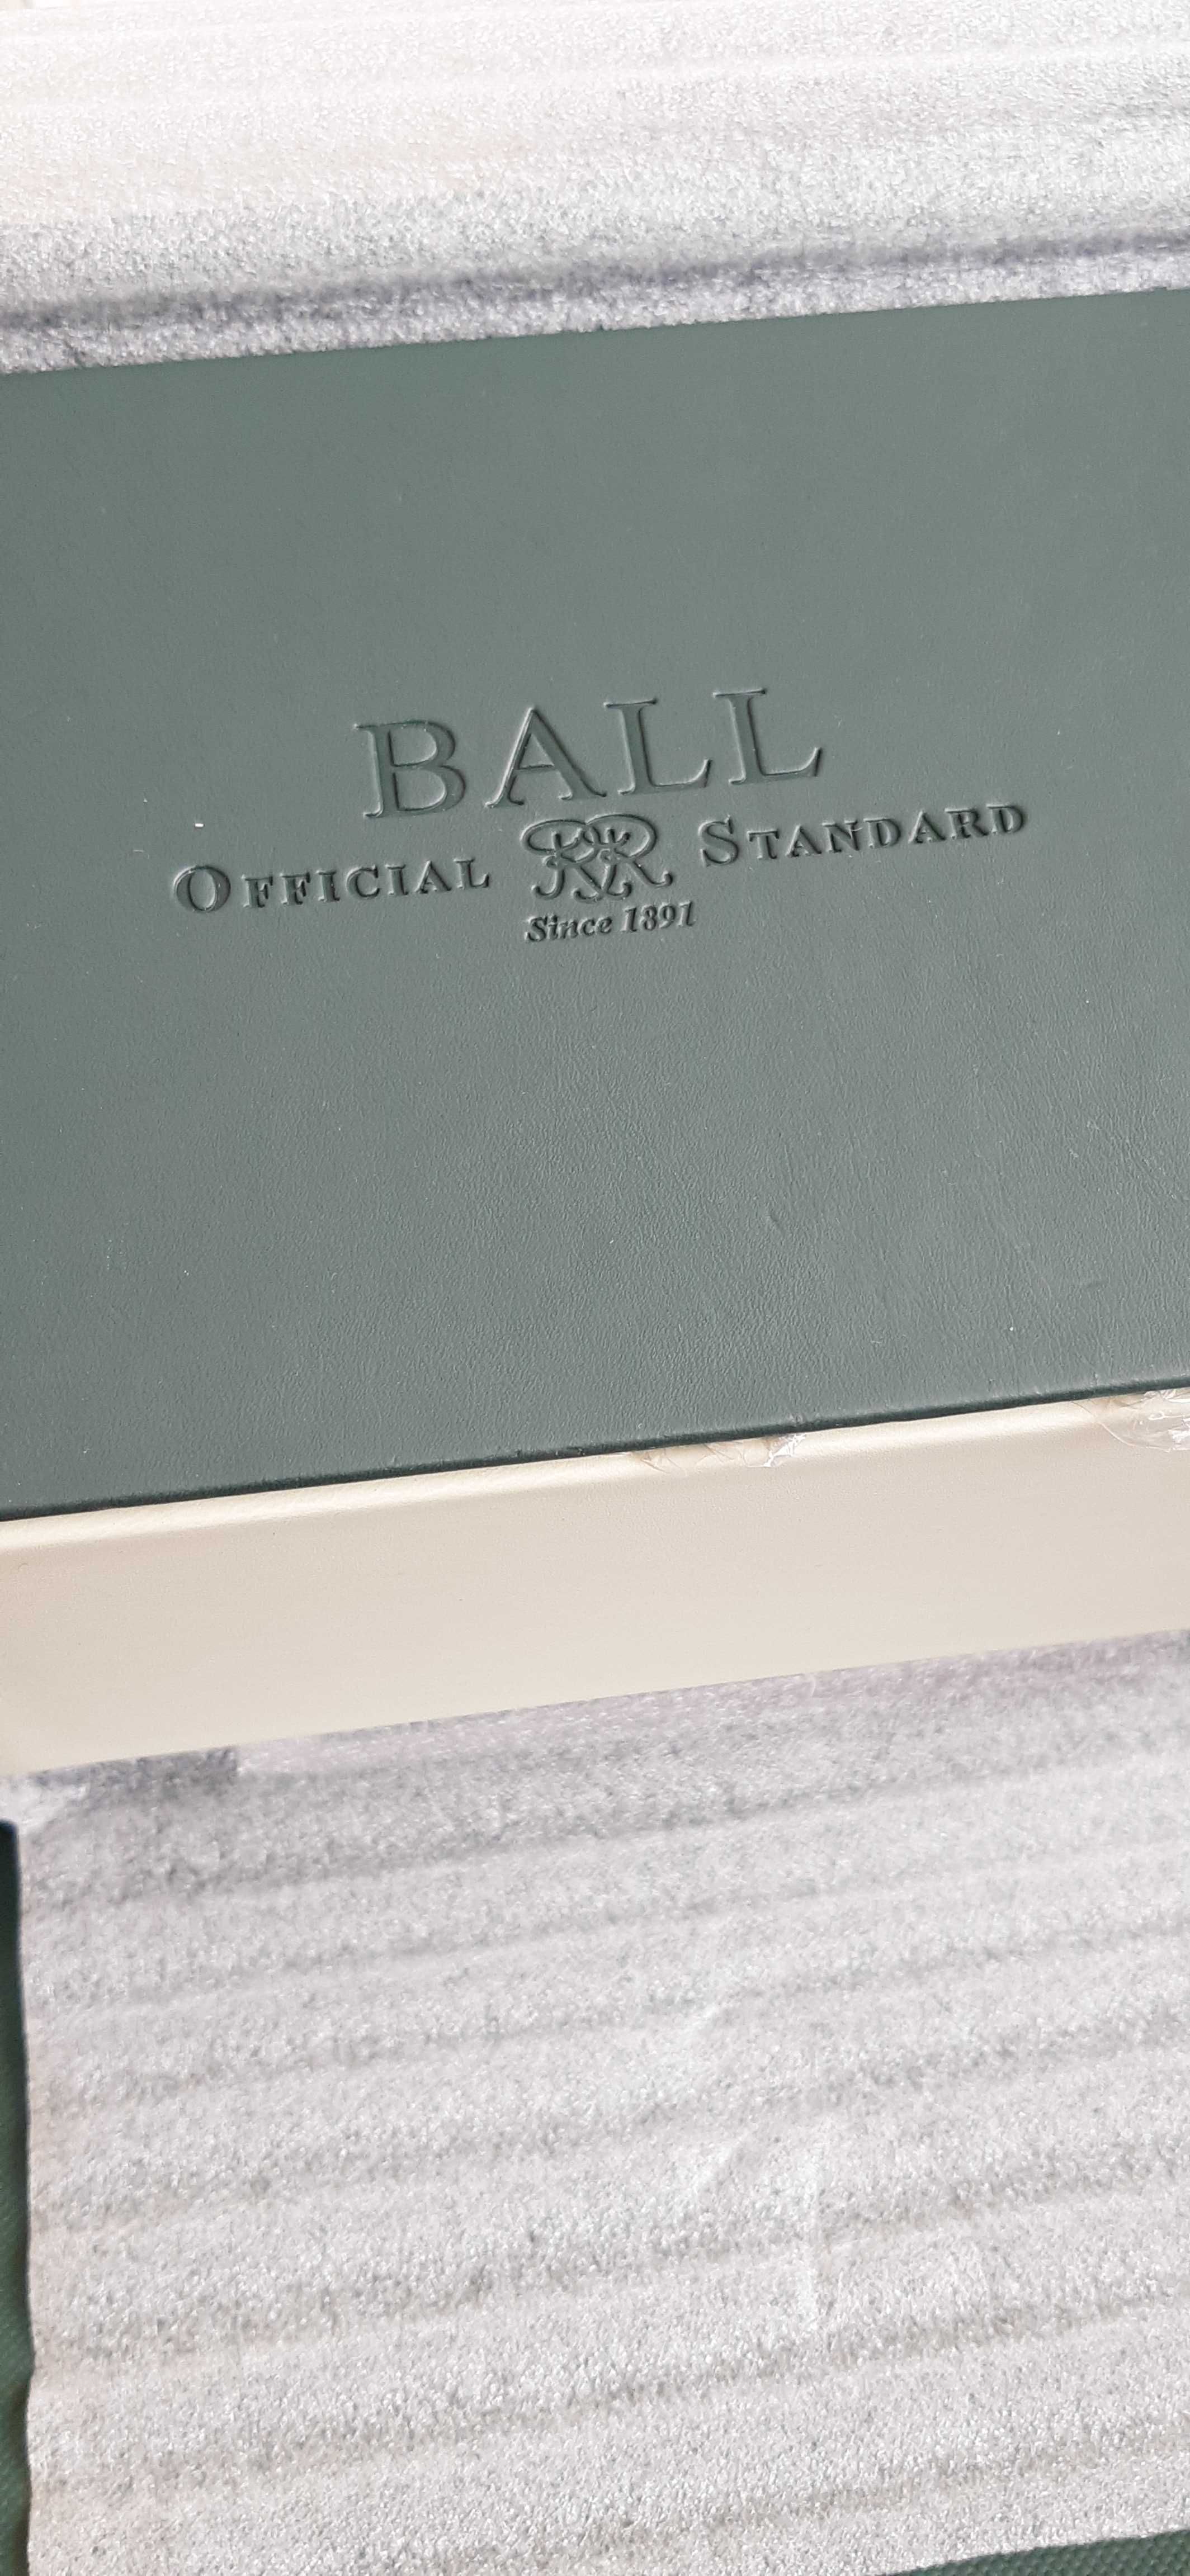 Ball Engineer Master II Цена-2330лв.